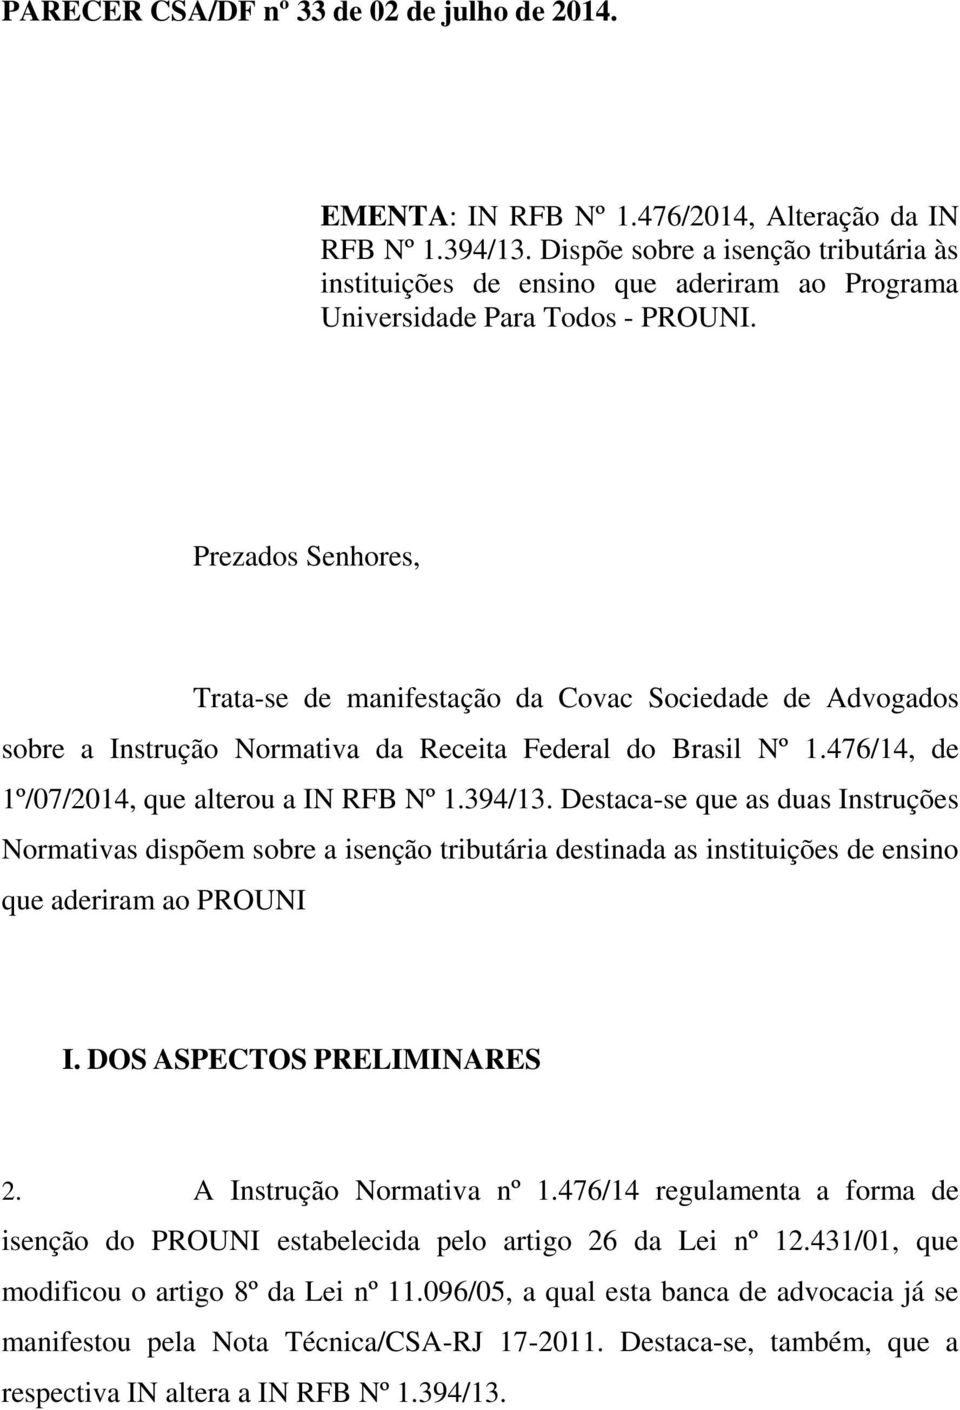 Prezados Senhores, Trata-se de manifestação da Covac Sociedade de Advogados sobre a Instrução Normativa da Receita Federal do Brasil Nº 1.476/14, de 1º/07/2014, que alterou a IN RFB Nº 1.394/13.